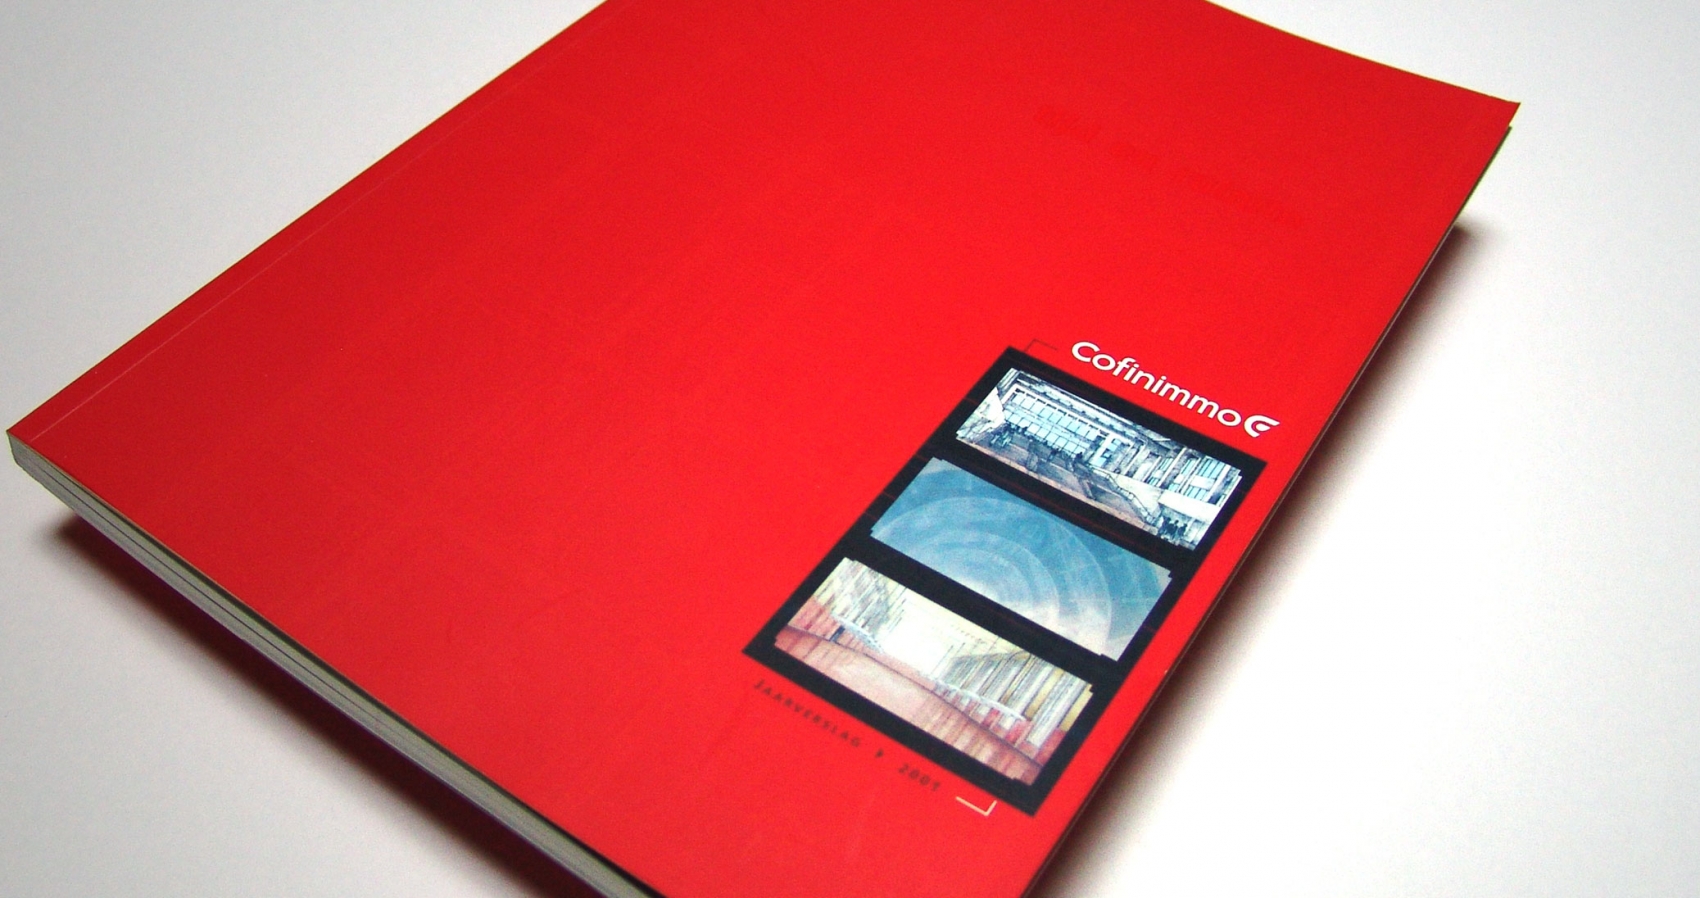 Cofinimmo - Annual Report 2001